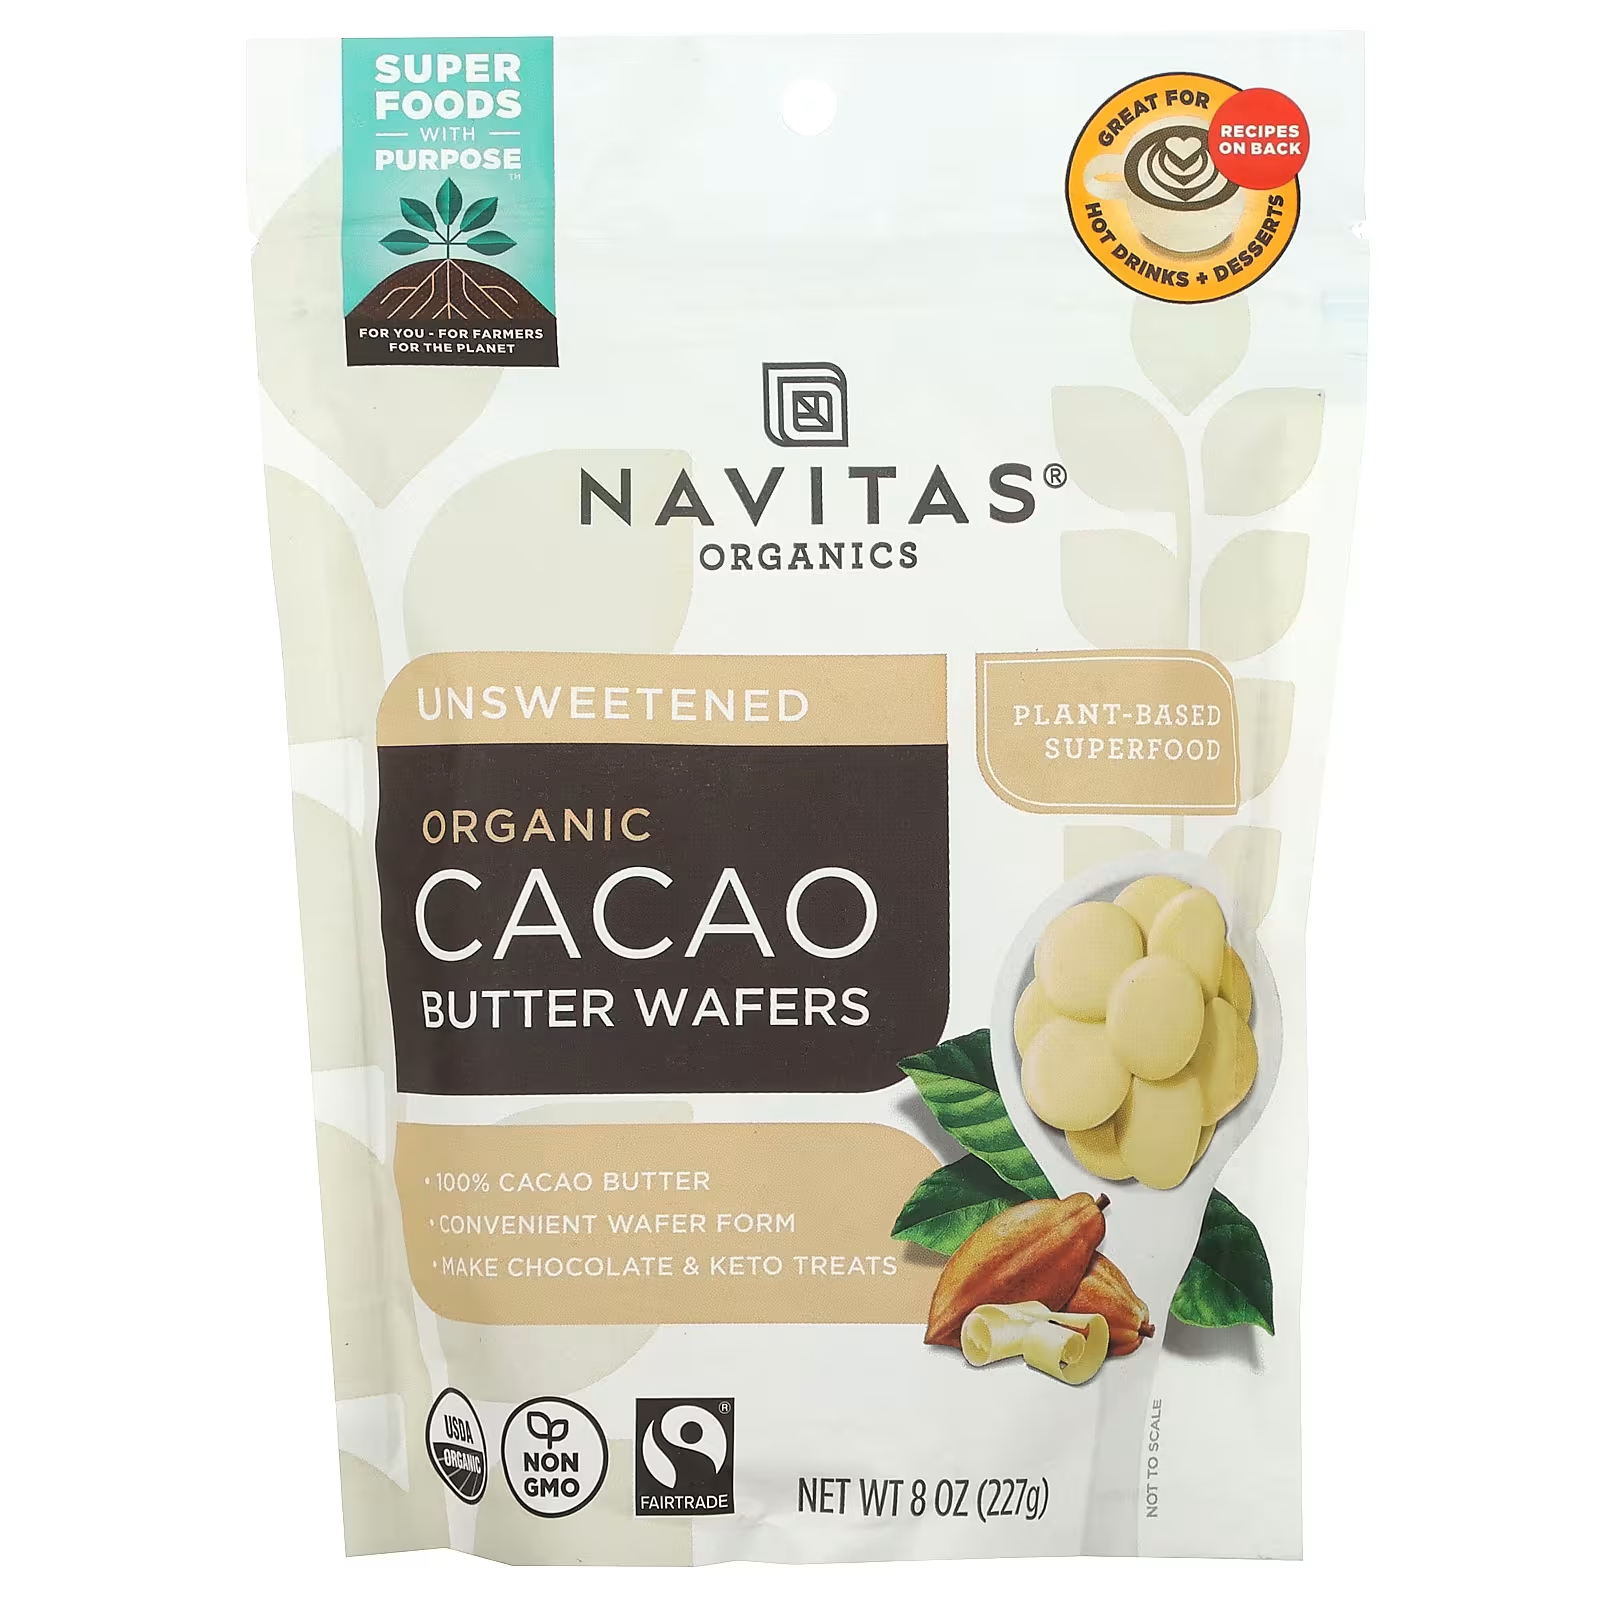 Navitas Organics Органические вафли с маслом какао, несладкие, 8 унций (227 г) navitas organics органический кето какао в порошке 227 г 8 унций